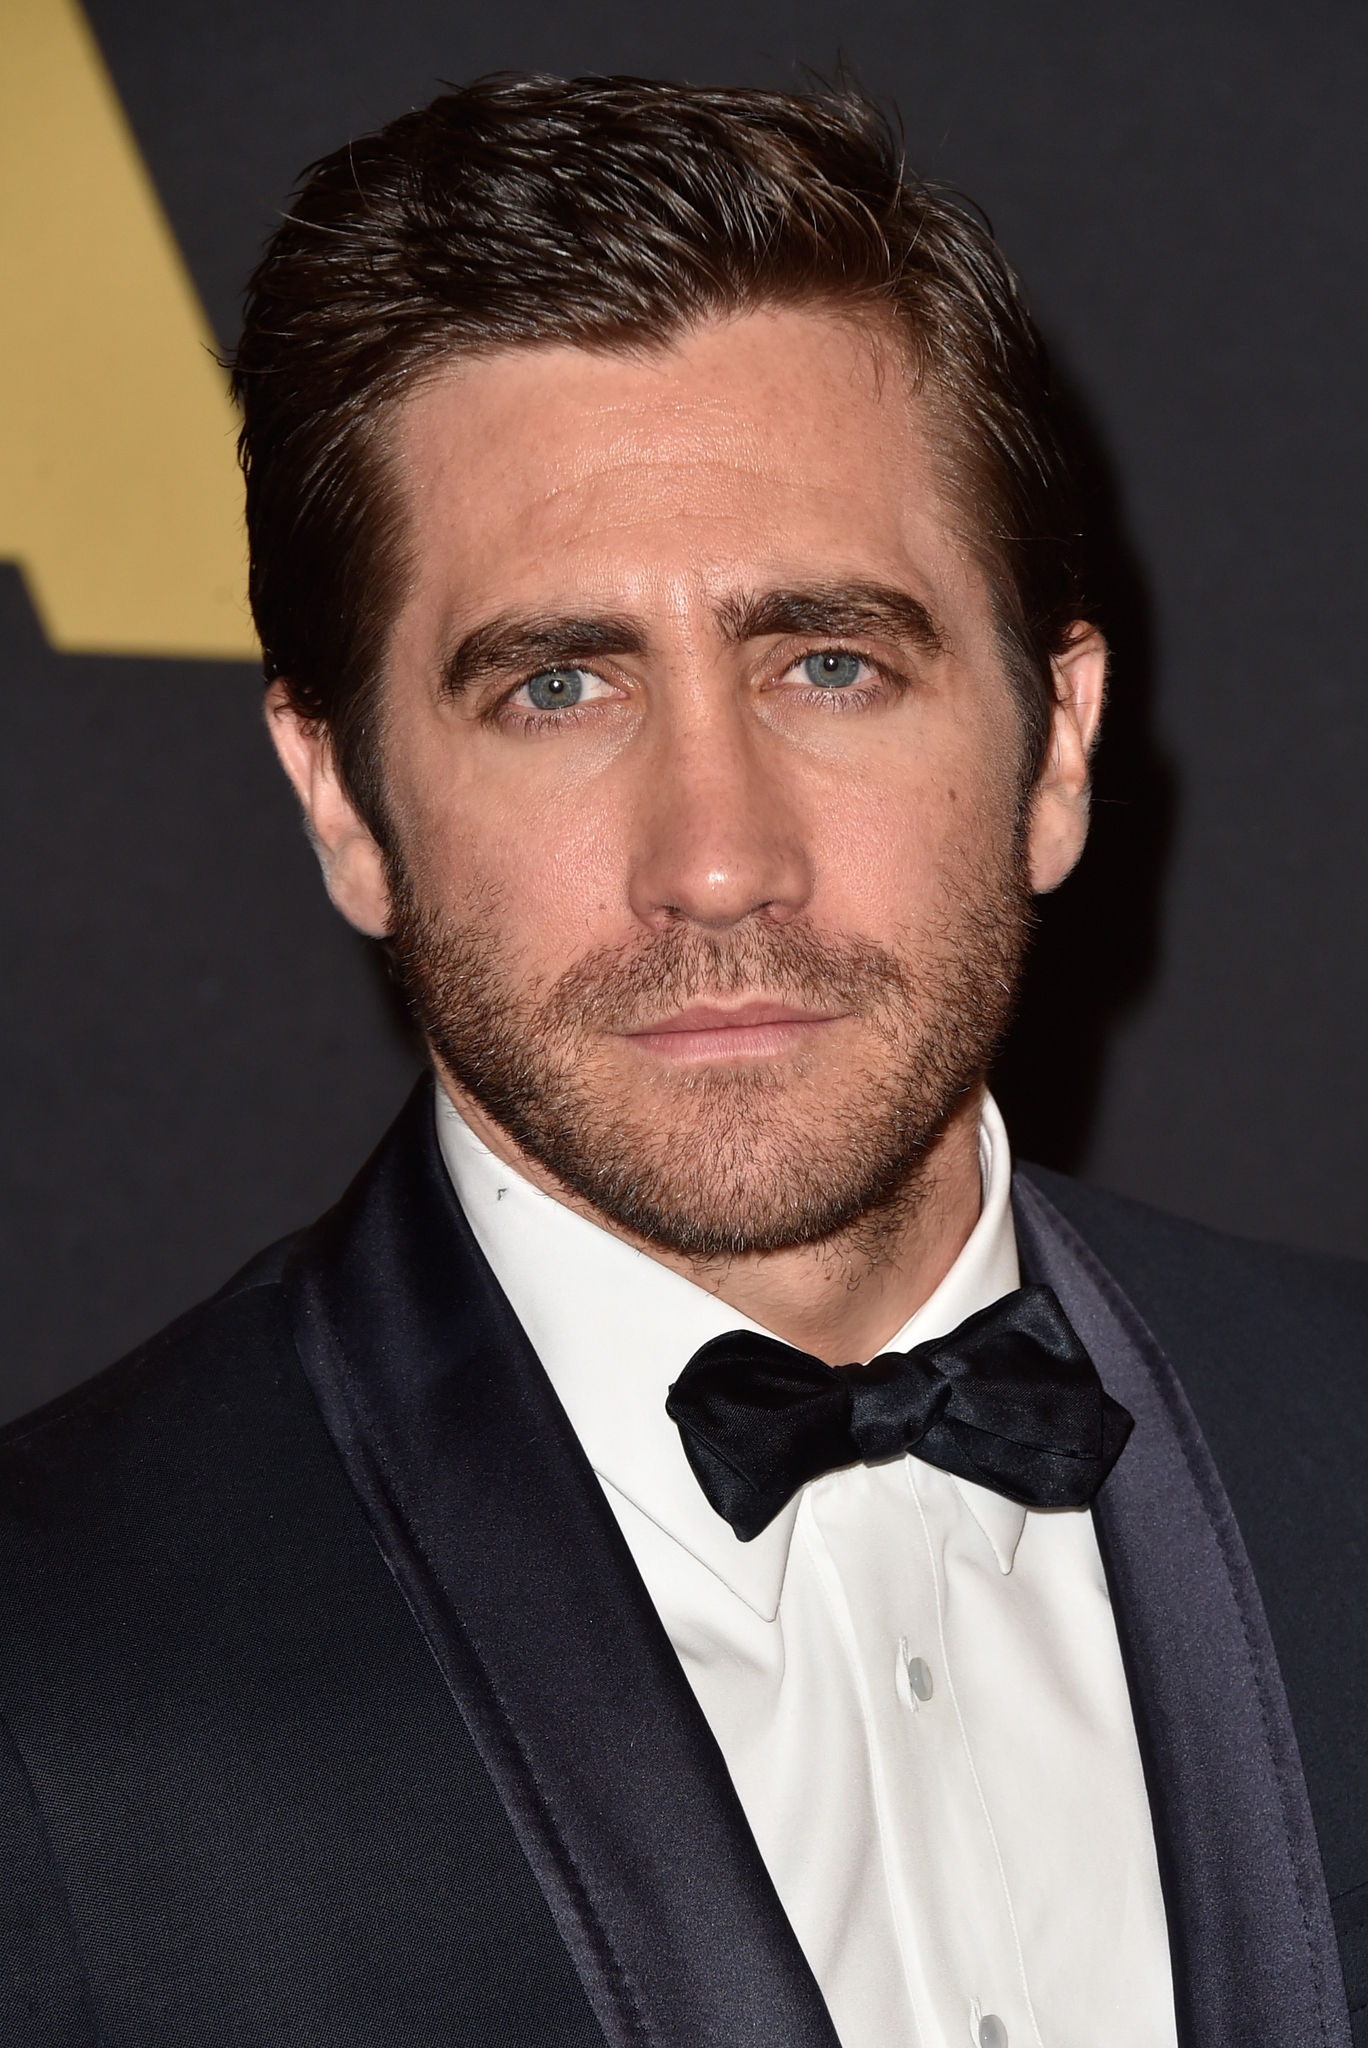  Životopis Jakea Gyllenhaala